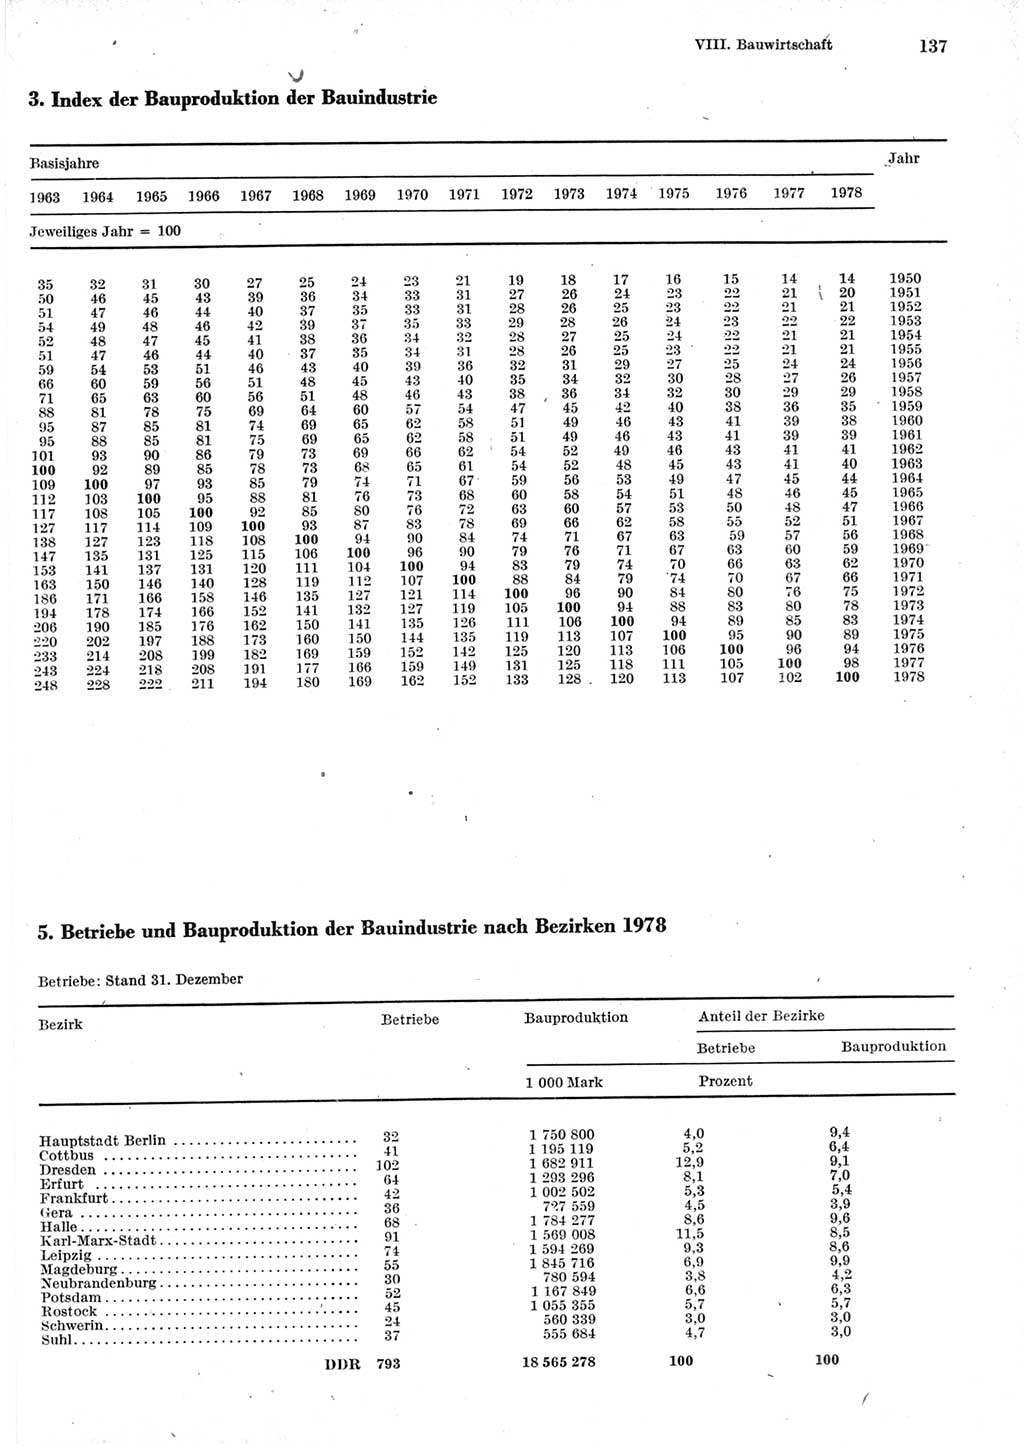 Statistisches Jahrbuch der Deutschen Demokratischen Republik (DDR) 1979, Seite 137 (Stat. Jb. DDR 1979, S. 137)